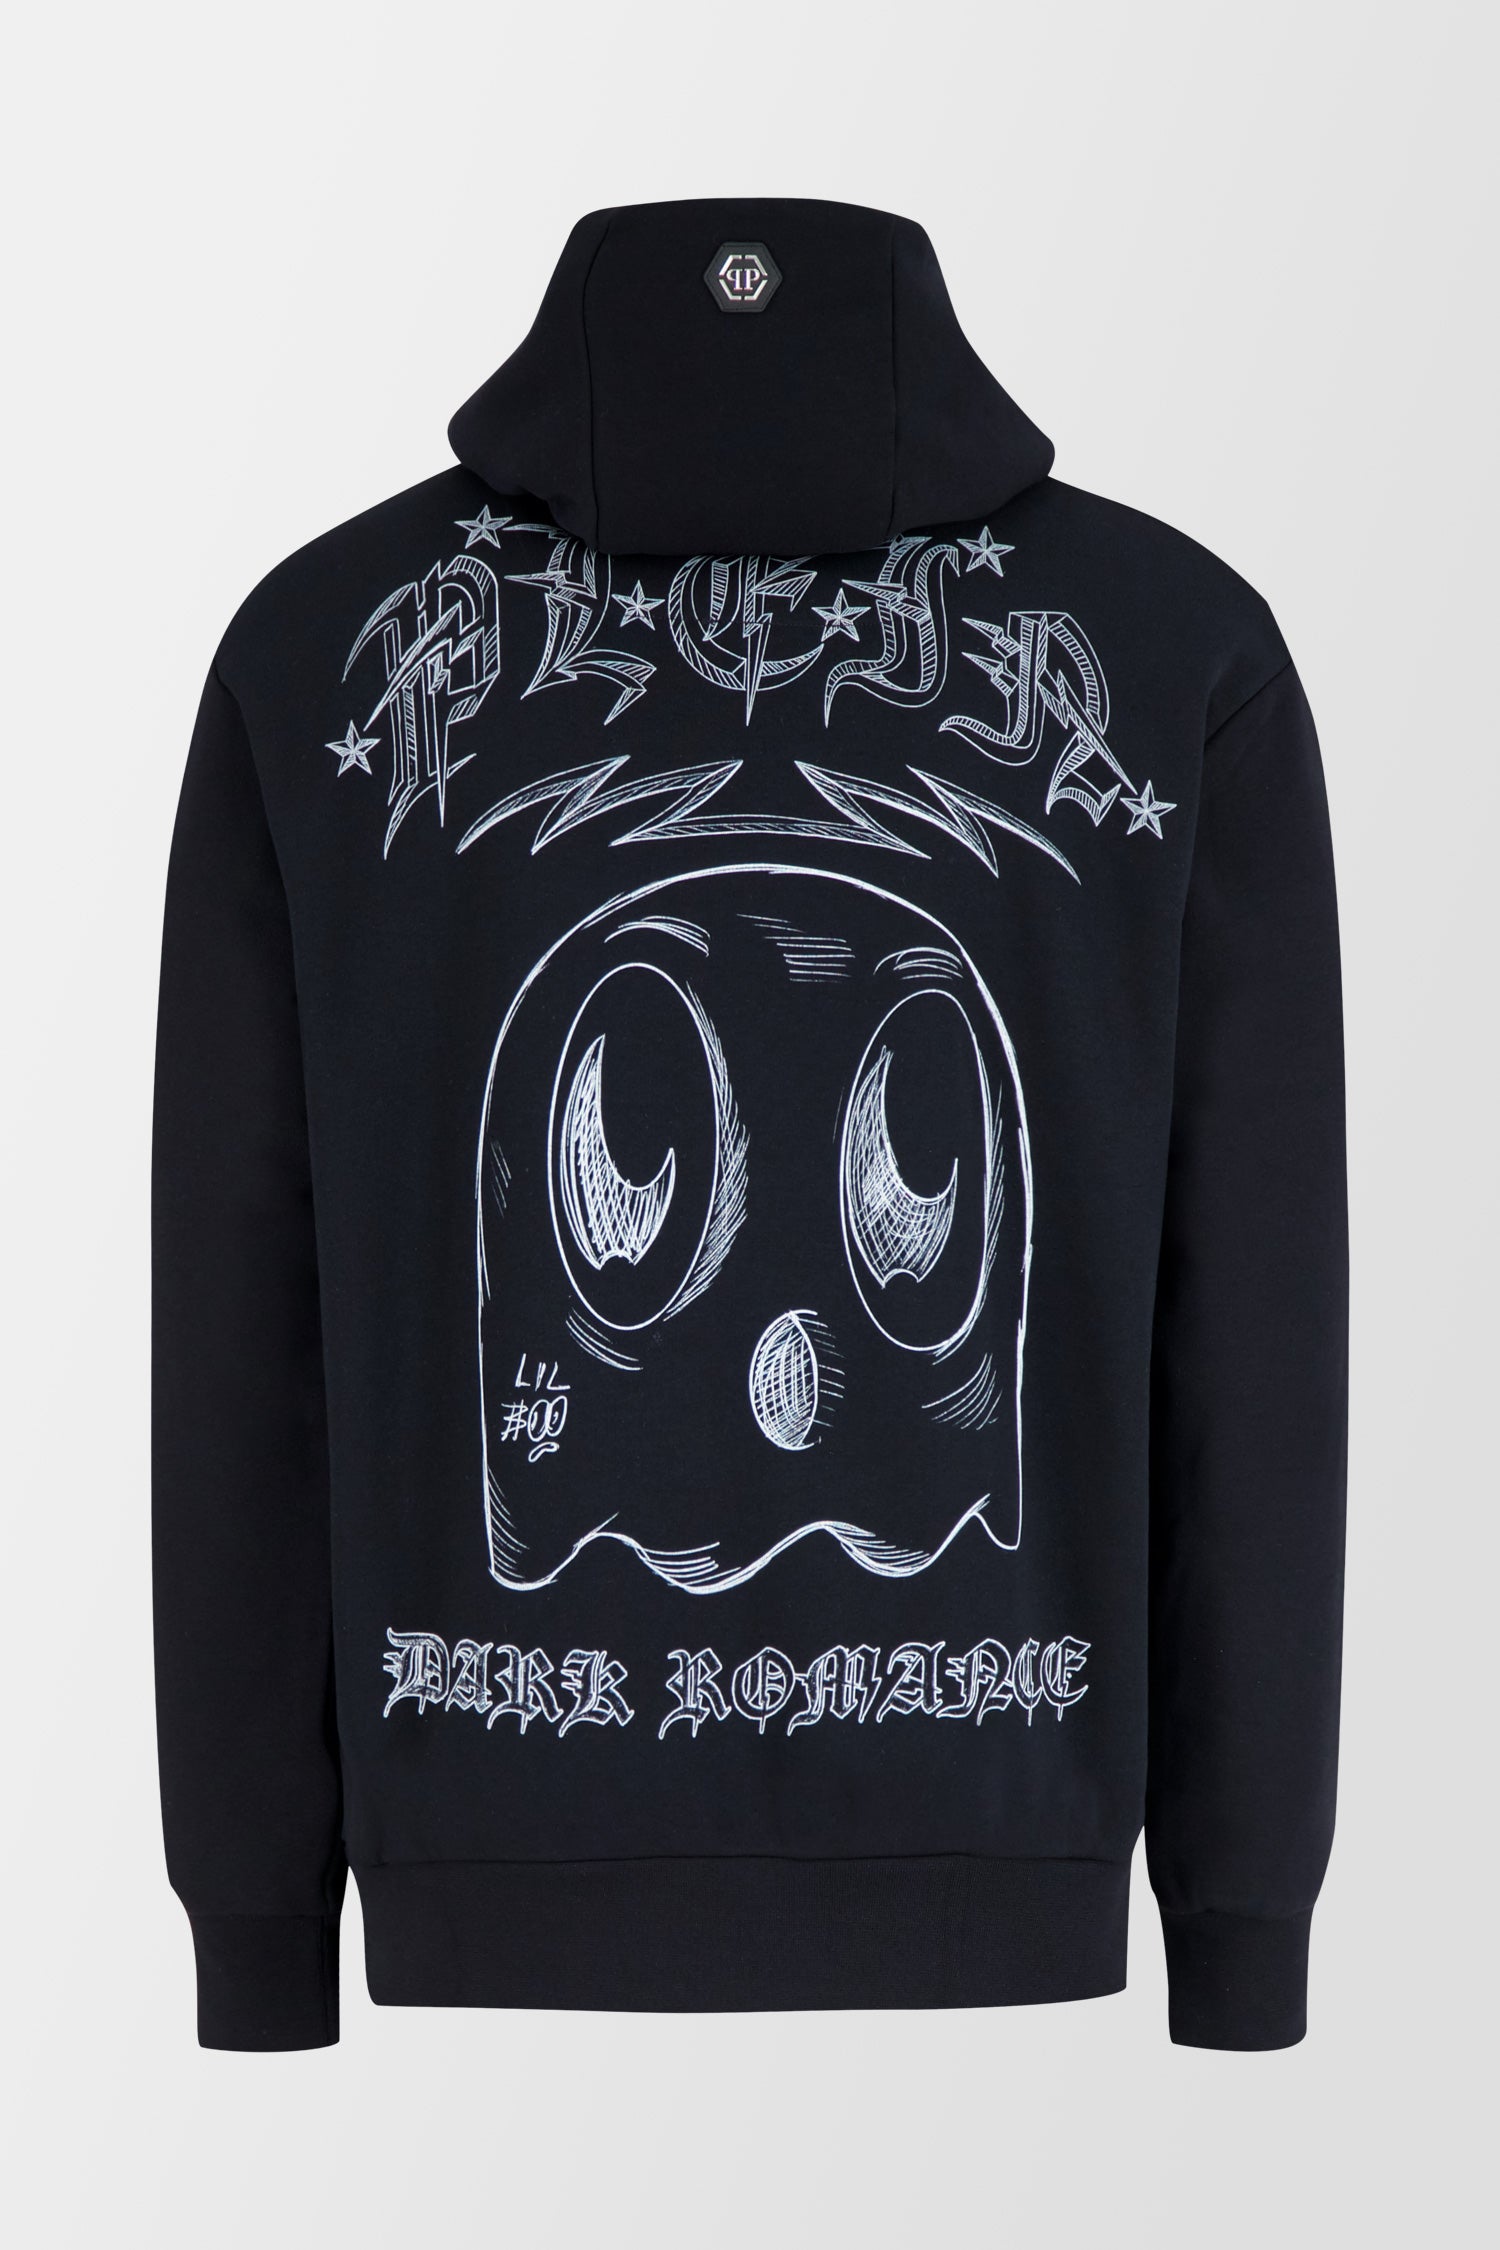 Philipp Plein Black Hoodie Monster Sweatshirt